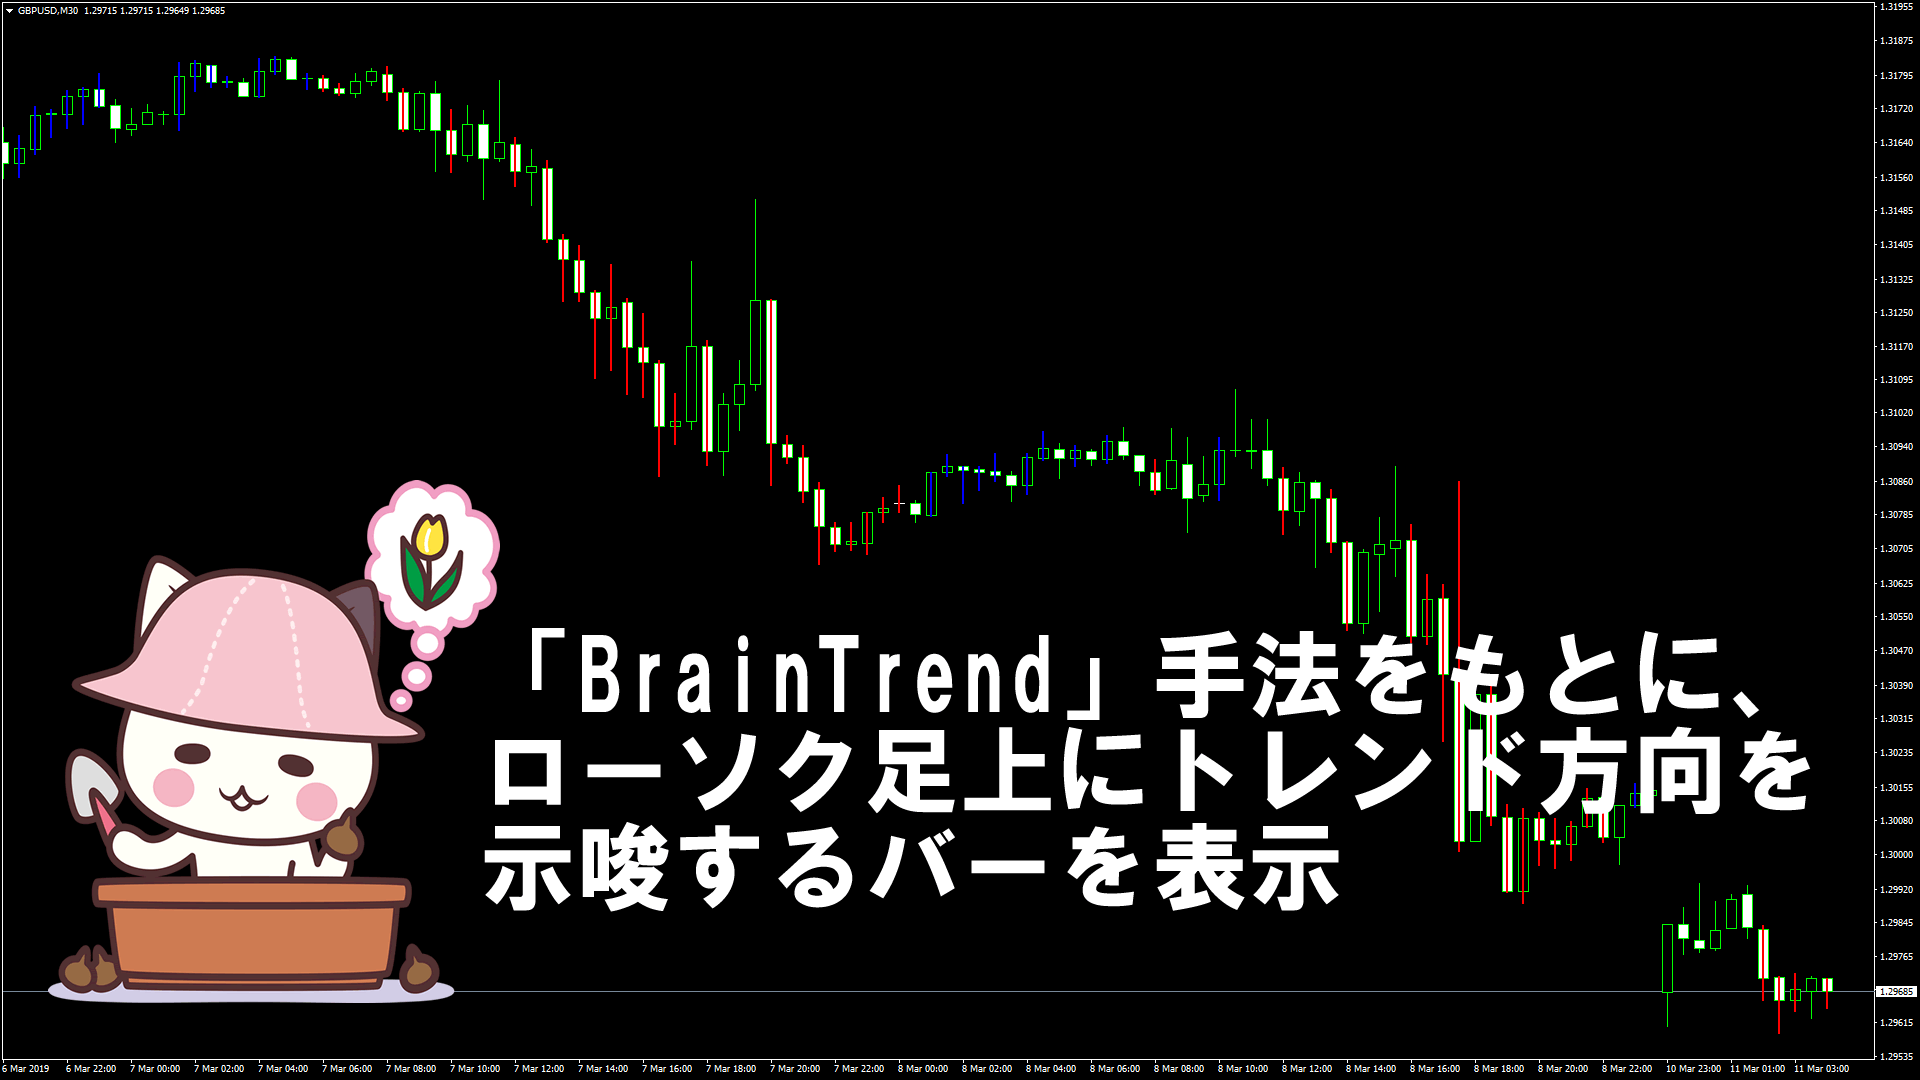 「BrainTrend」手法をもとに、ローソク足上にトレンド方向を示唆するバーを表示するMT4インジケーター『BT1』